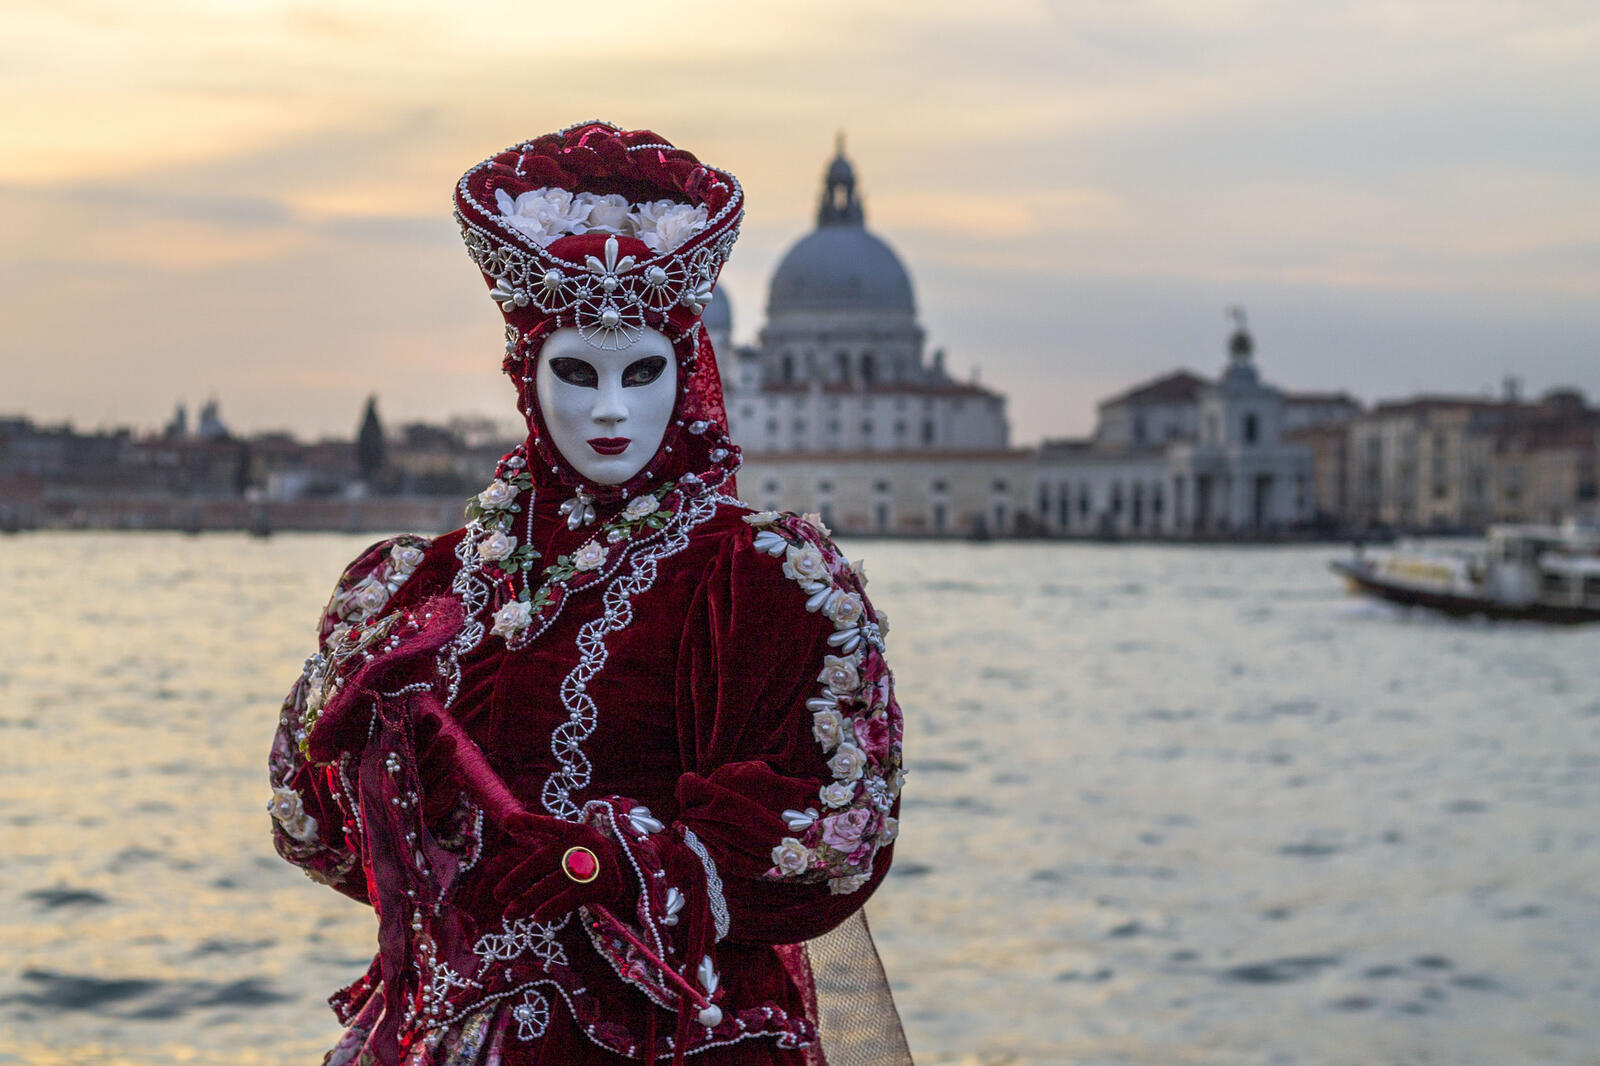 Wallpapers Venetian mask masks Venetian masks on the desktop